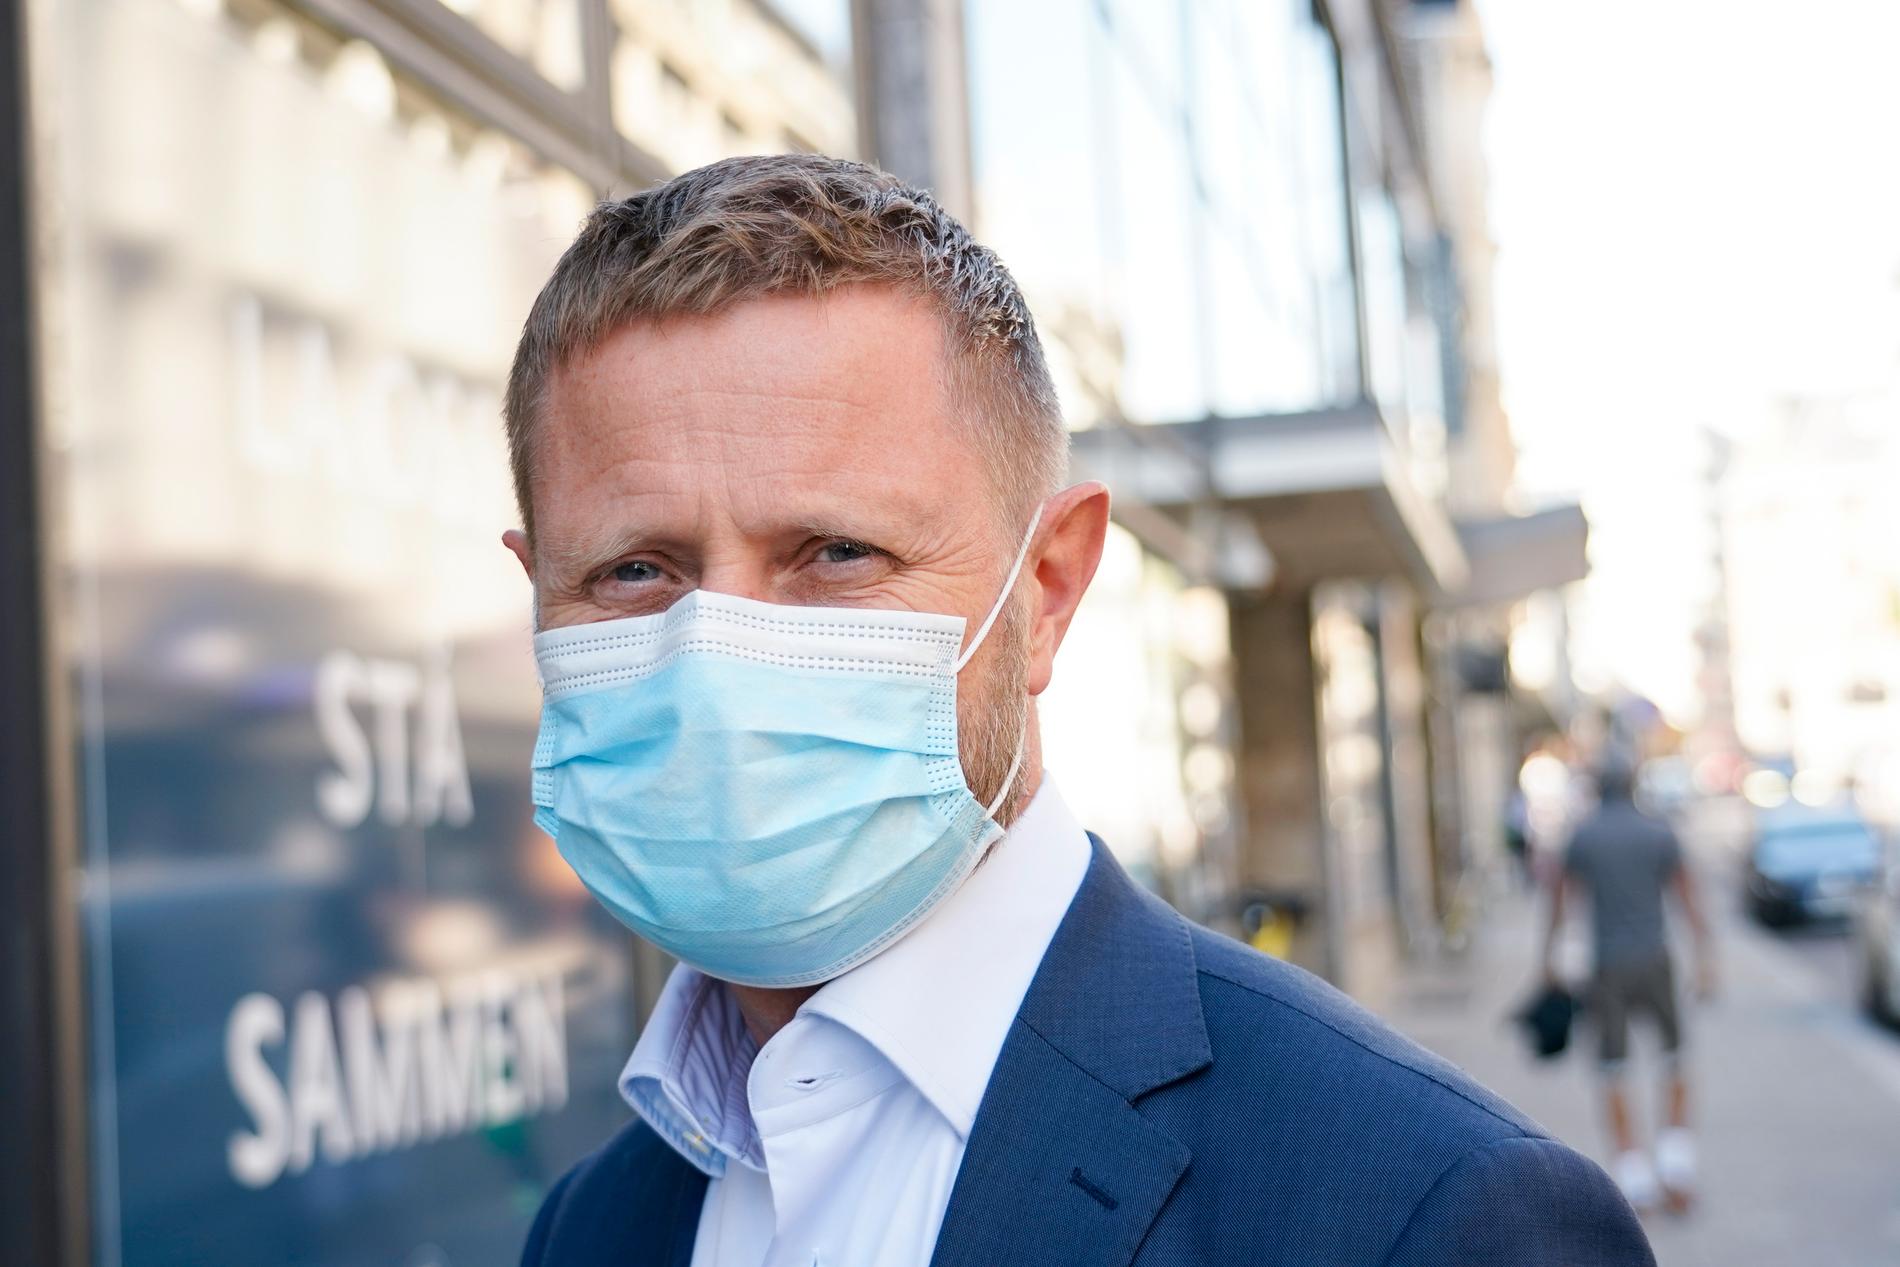 Norges hälsominister Bent Høie (H), med munskydd. Nu vill den norska regeringen se att ansiktsmasker används i rusningstid i kollektivtrafiken.